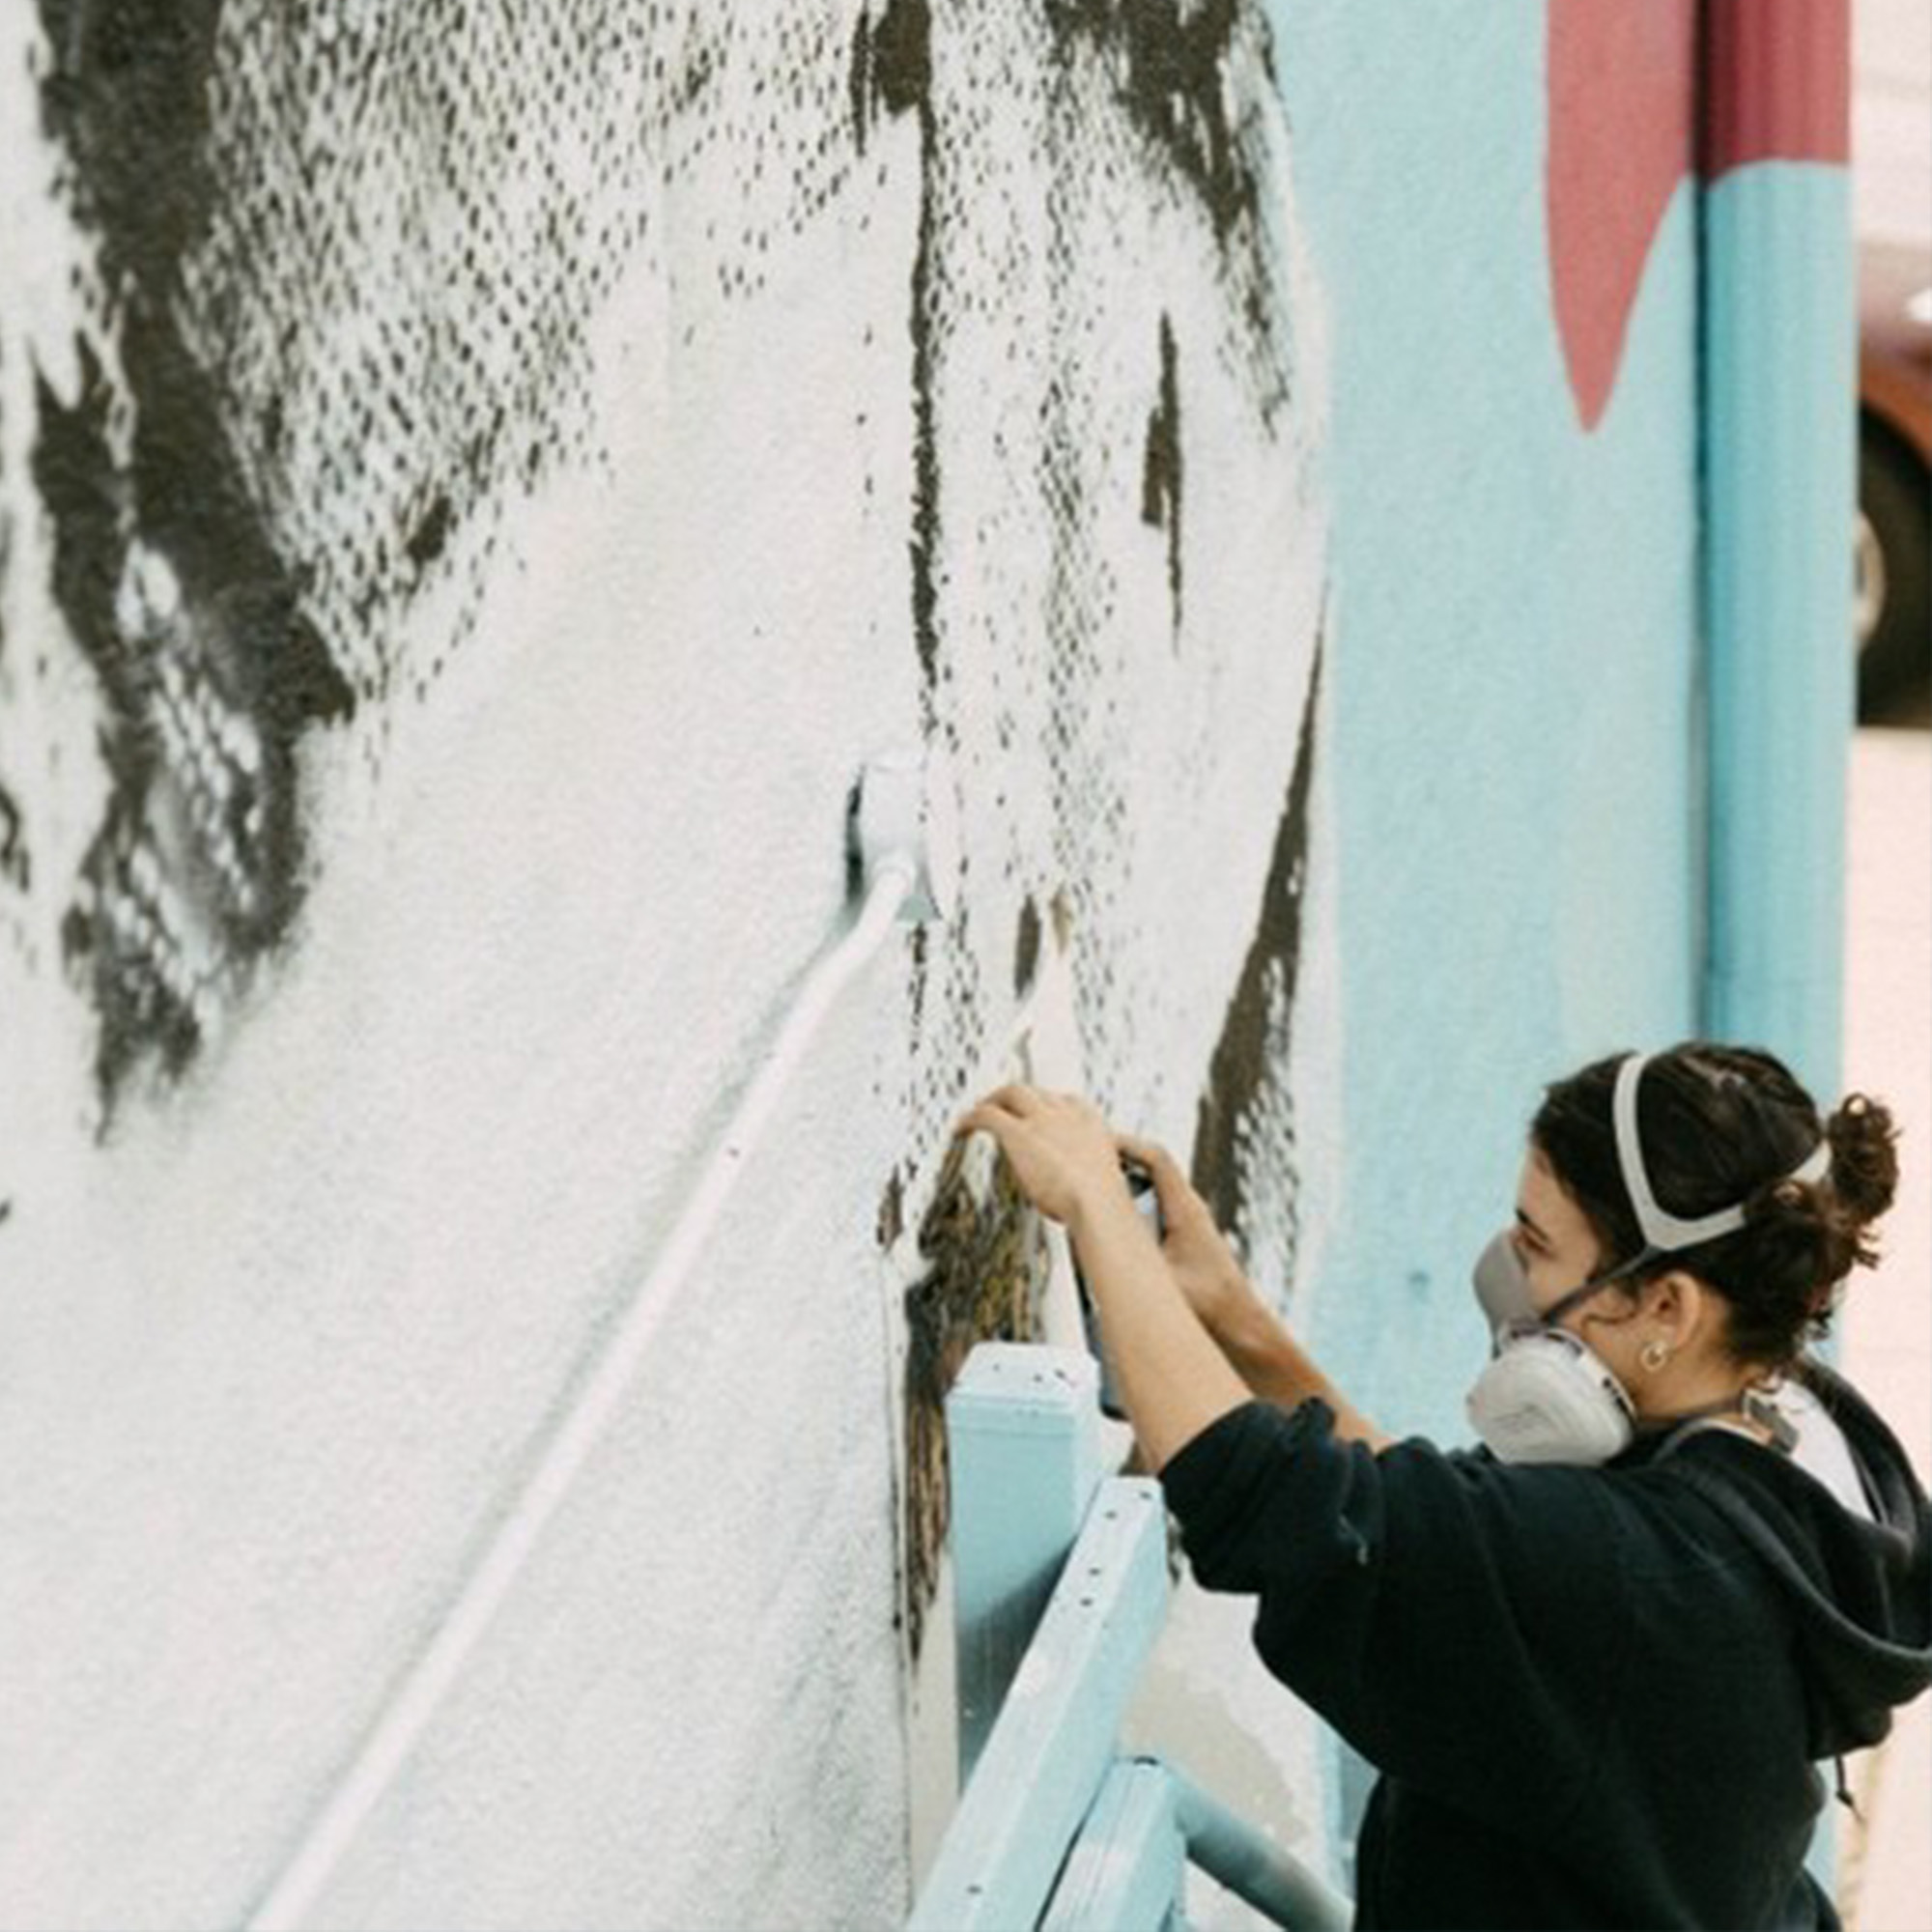 Artist Oria Simonini Spray Paints A Stencil On An Outdoor Wall